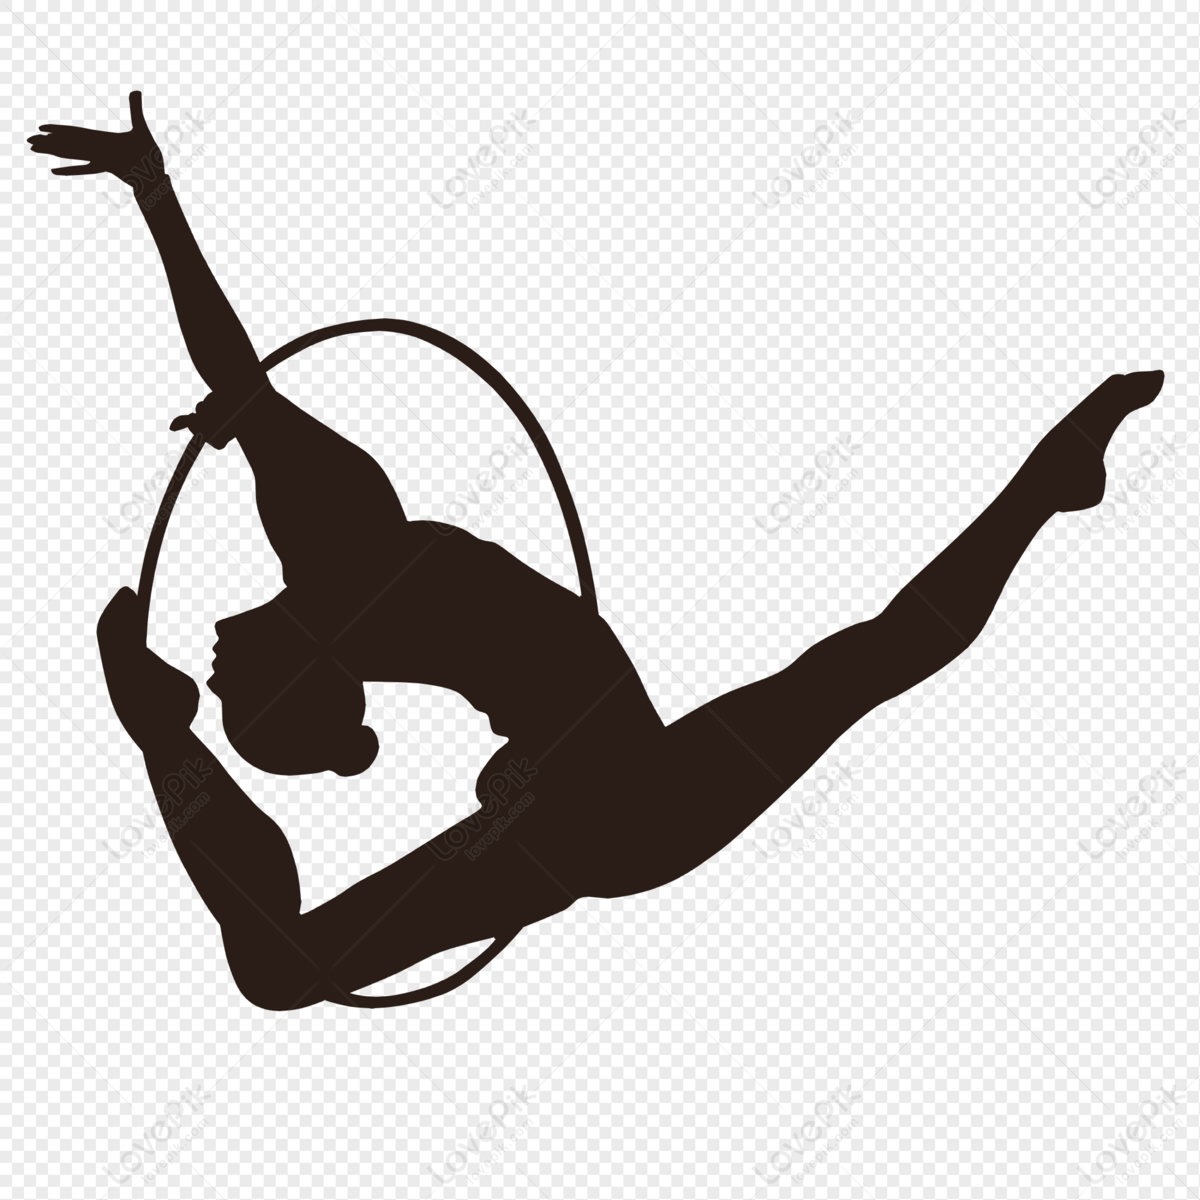 Gymnastic Female Athlete Silhouette, Athletes, Athlete Silhouettes ...